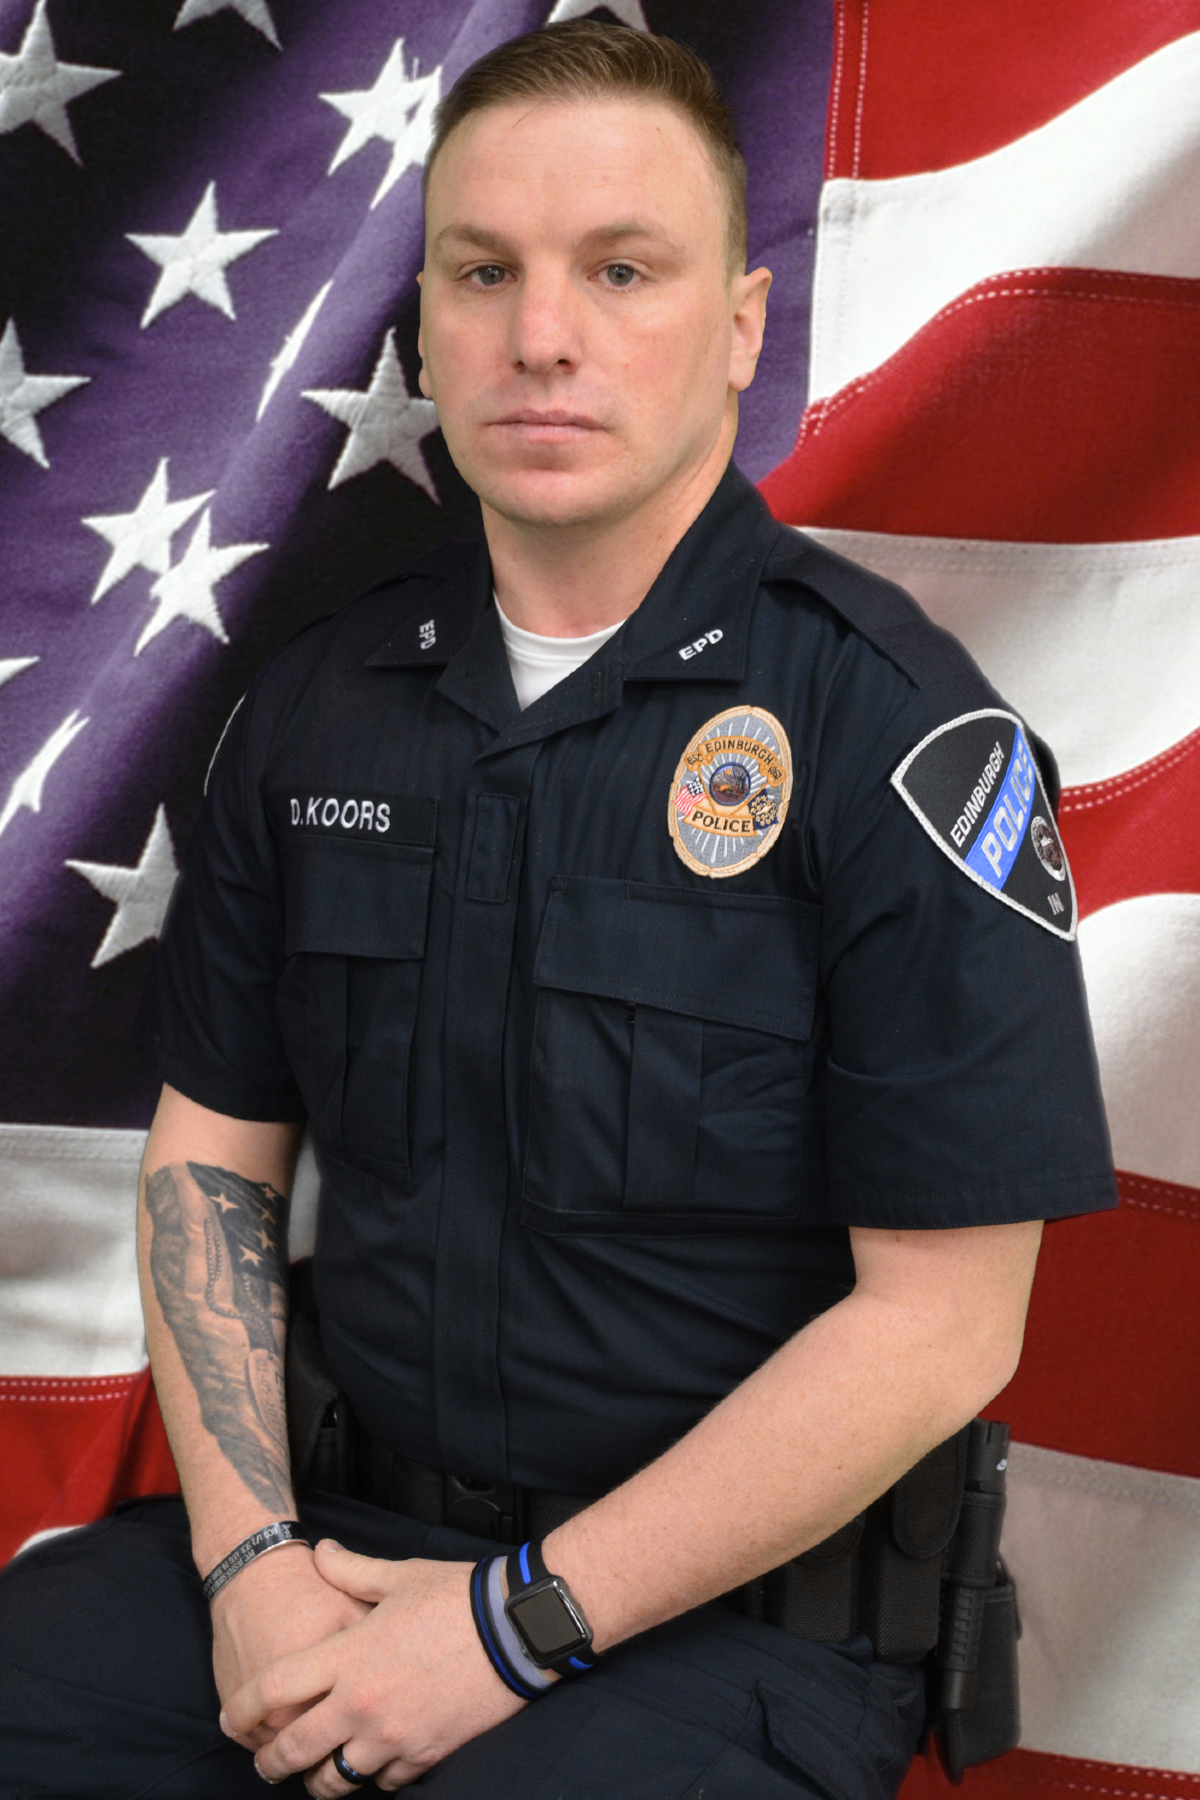 Officer Darren Koors